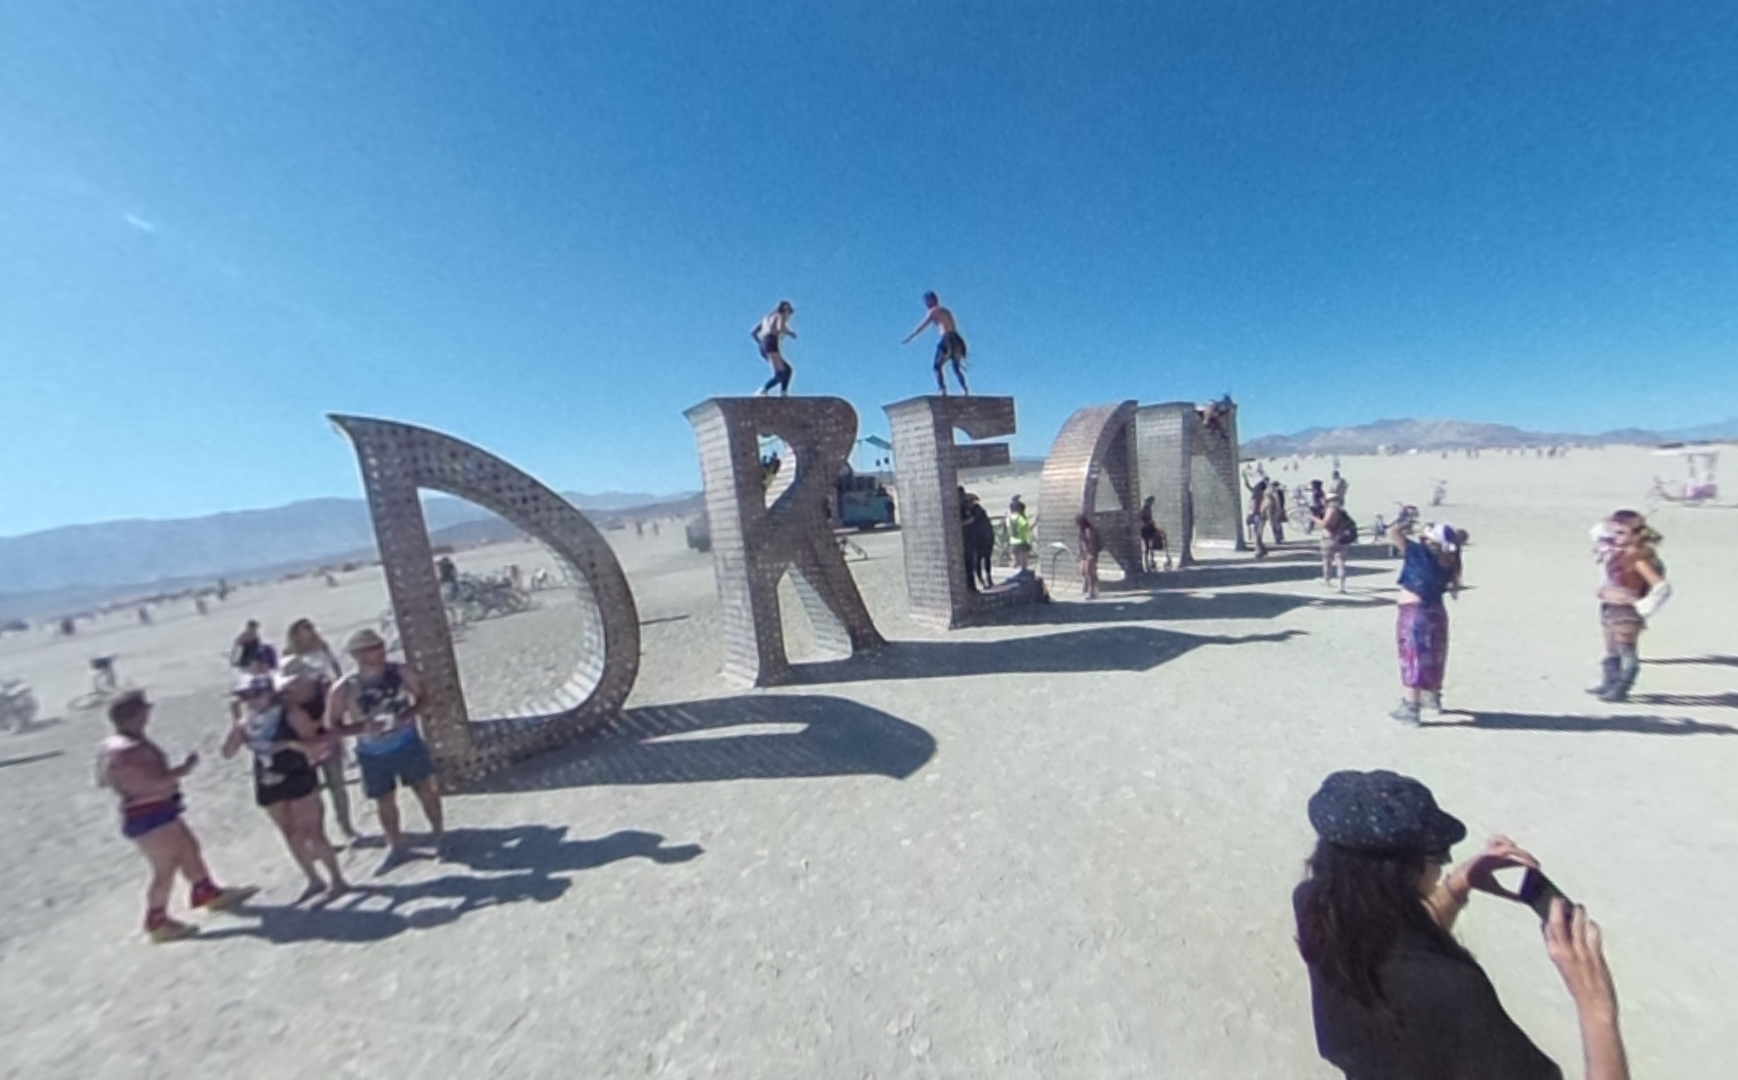 Look around at Burning Man 2015